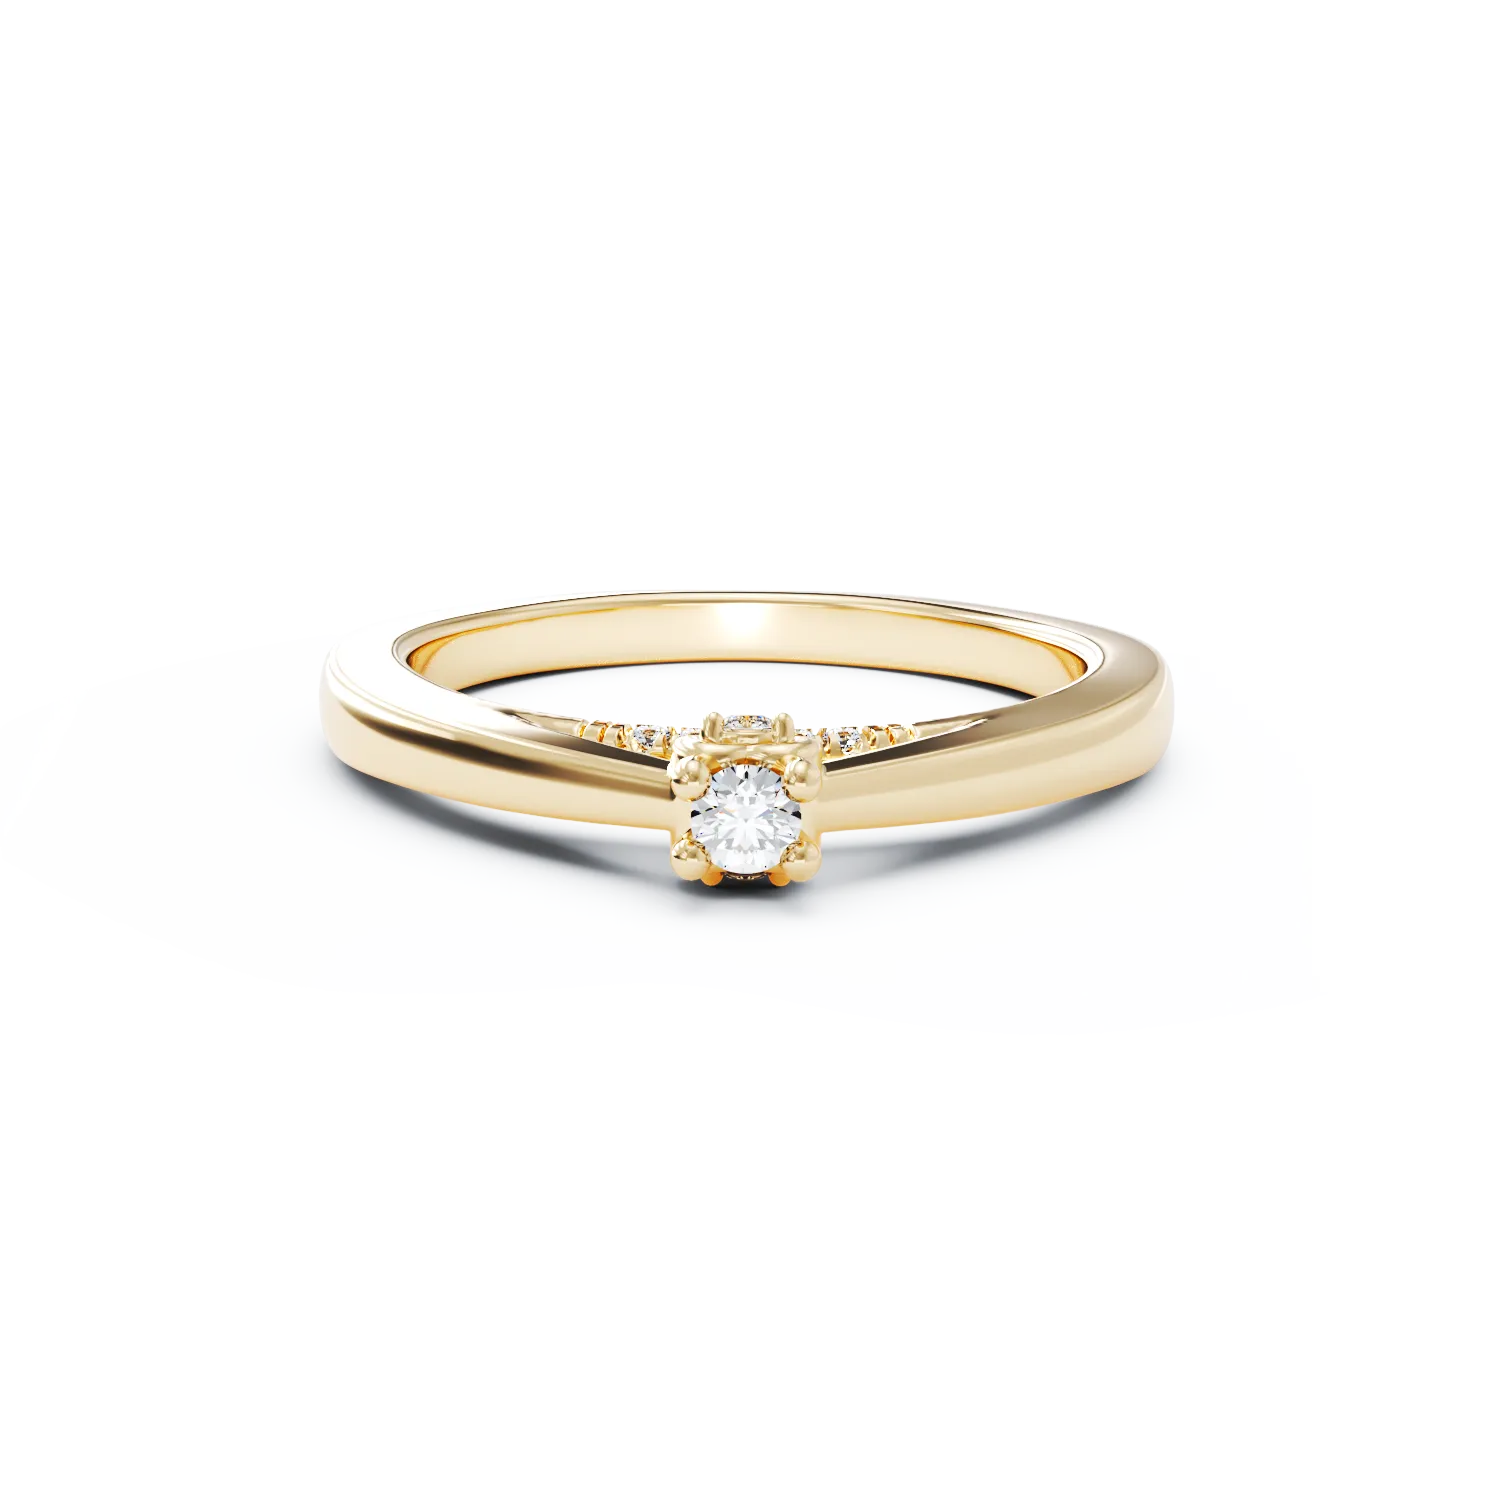 Eljegyzési gyűrű 18K-os sárga aranyból 0,12ct gyémánttal és 0,05ct gyémántokkal. Gramm: 2,58